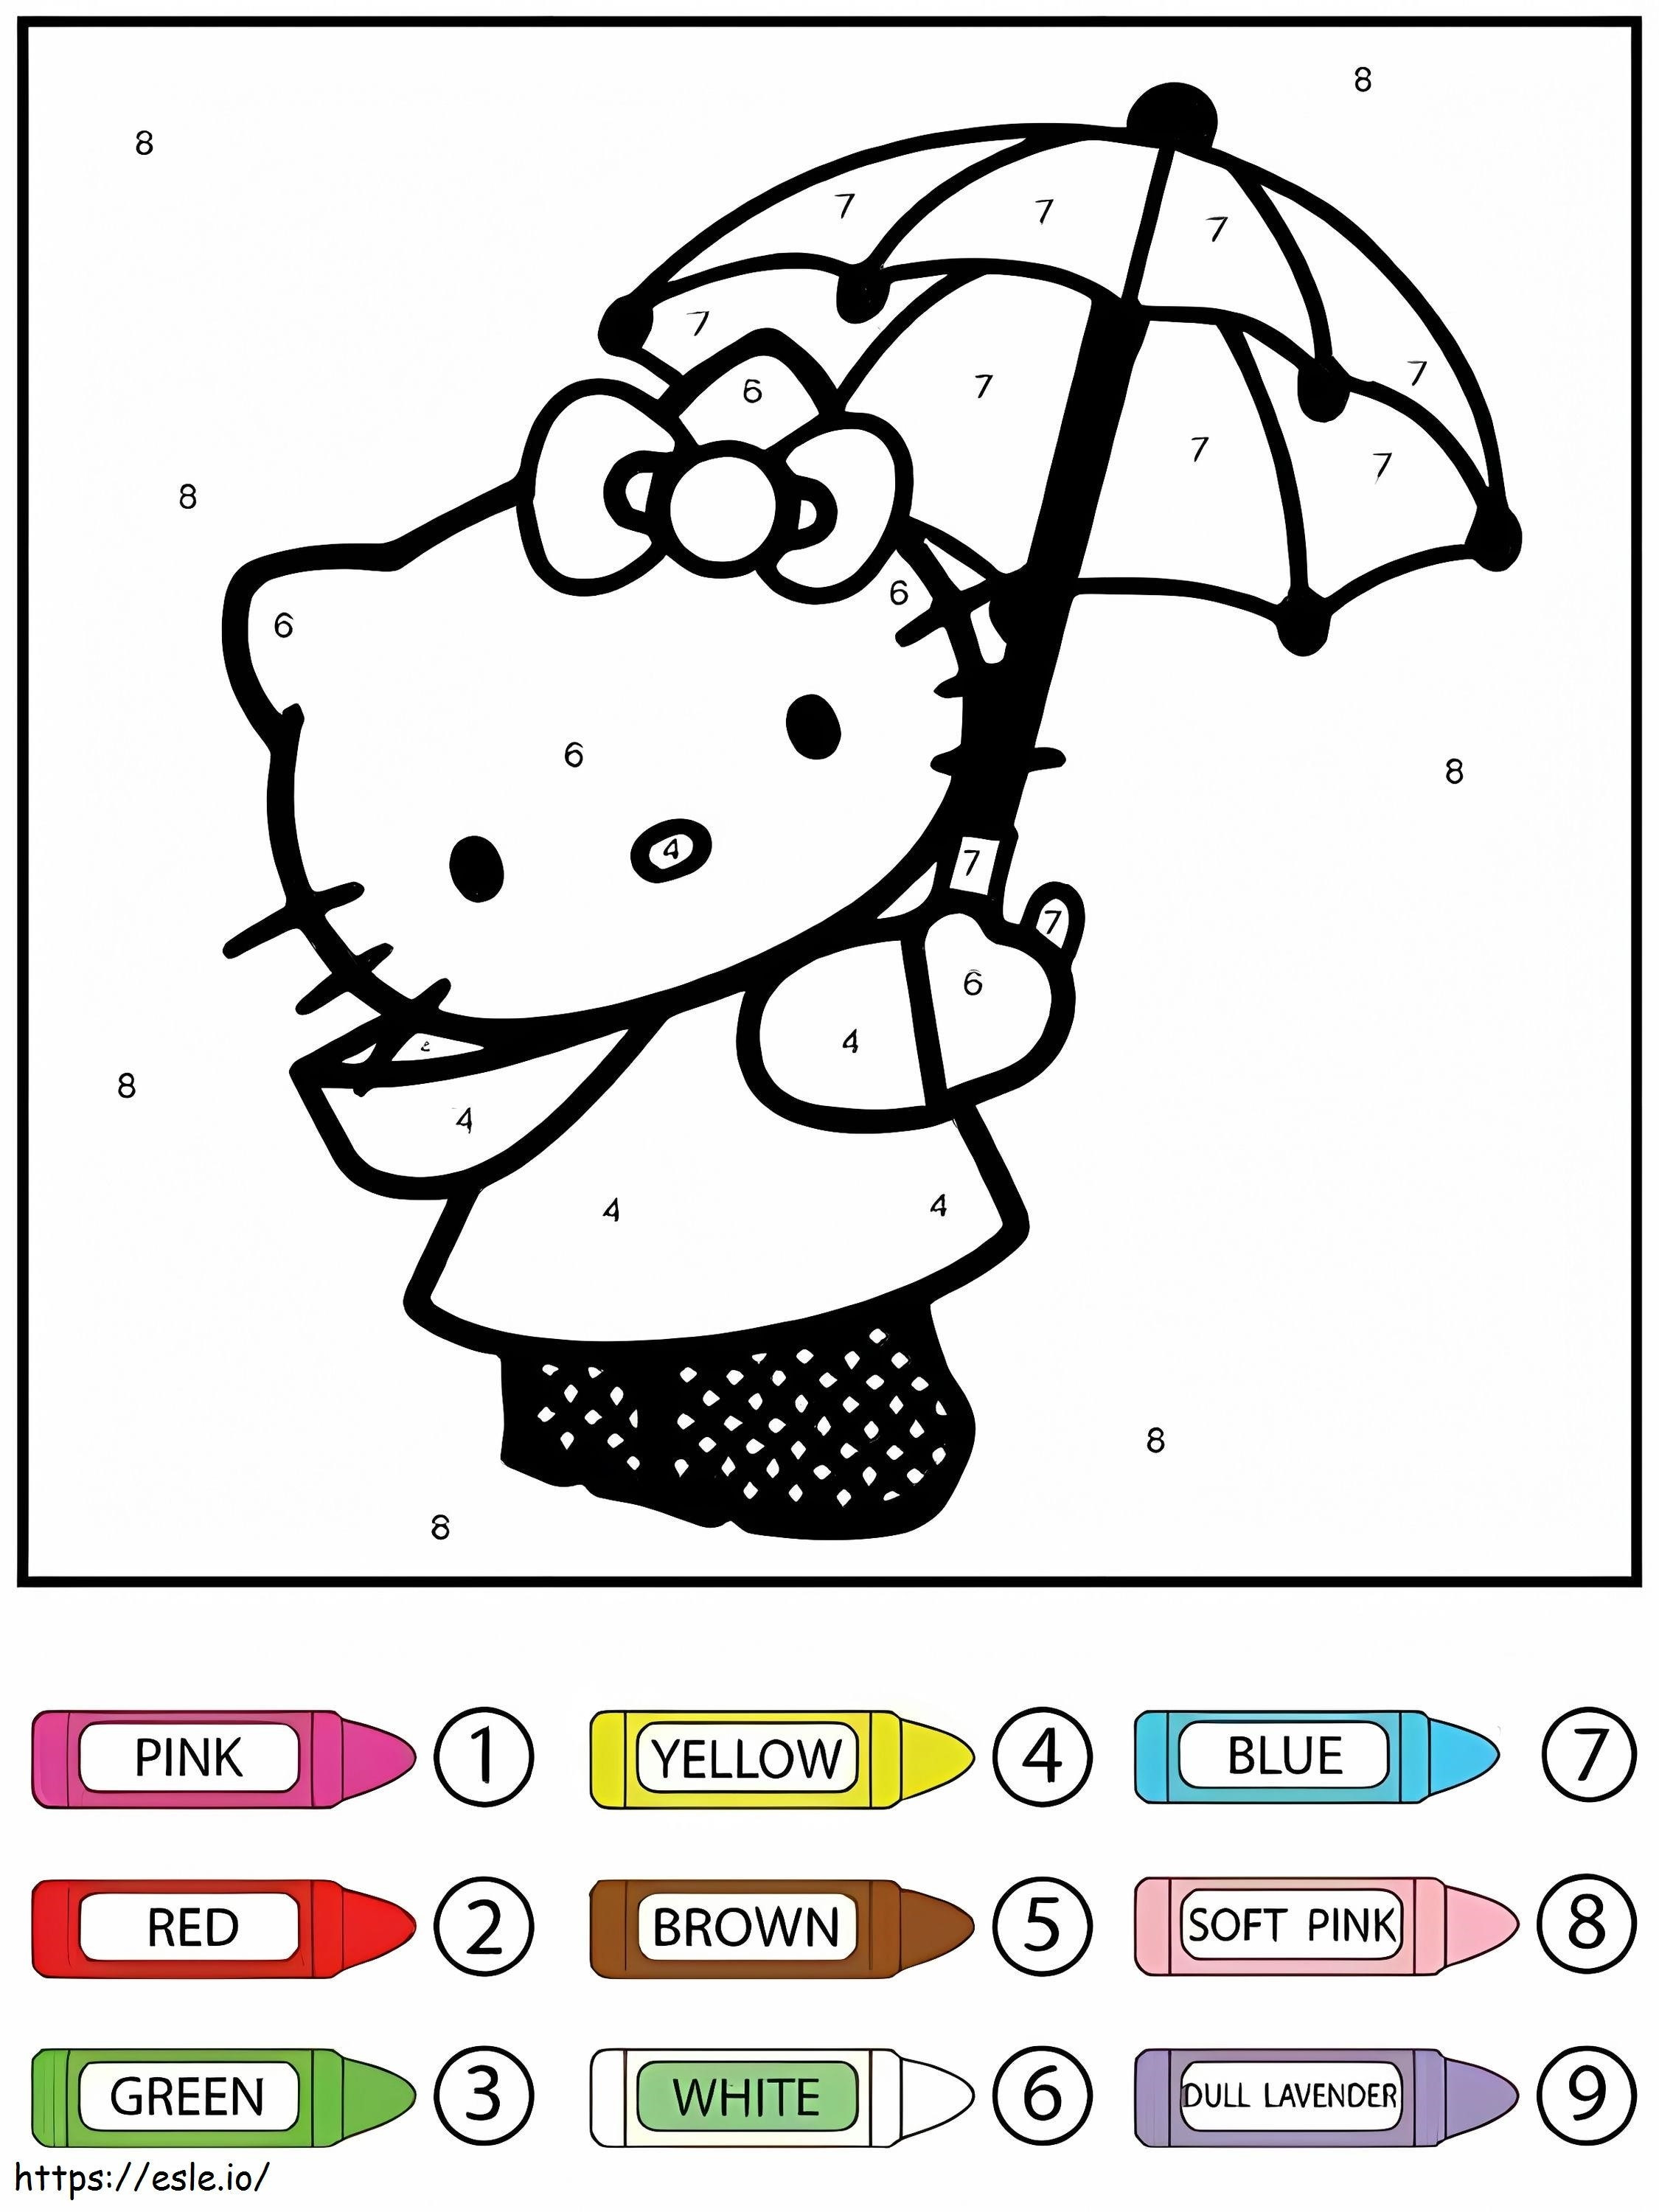 Hello Kitty segurando guarda-chuva colorido por número para colorir